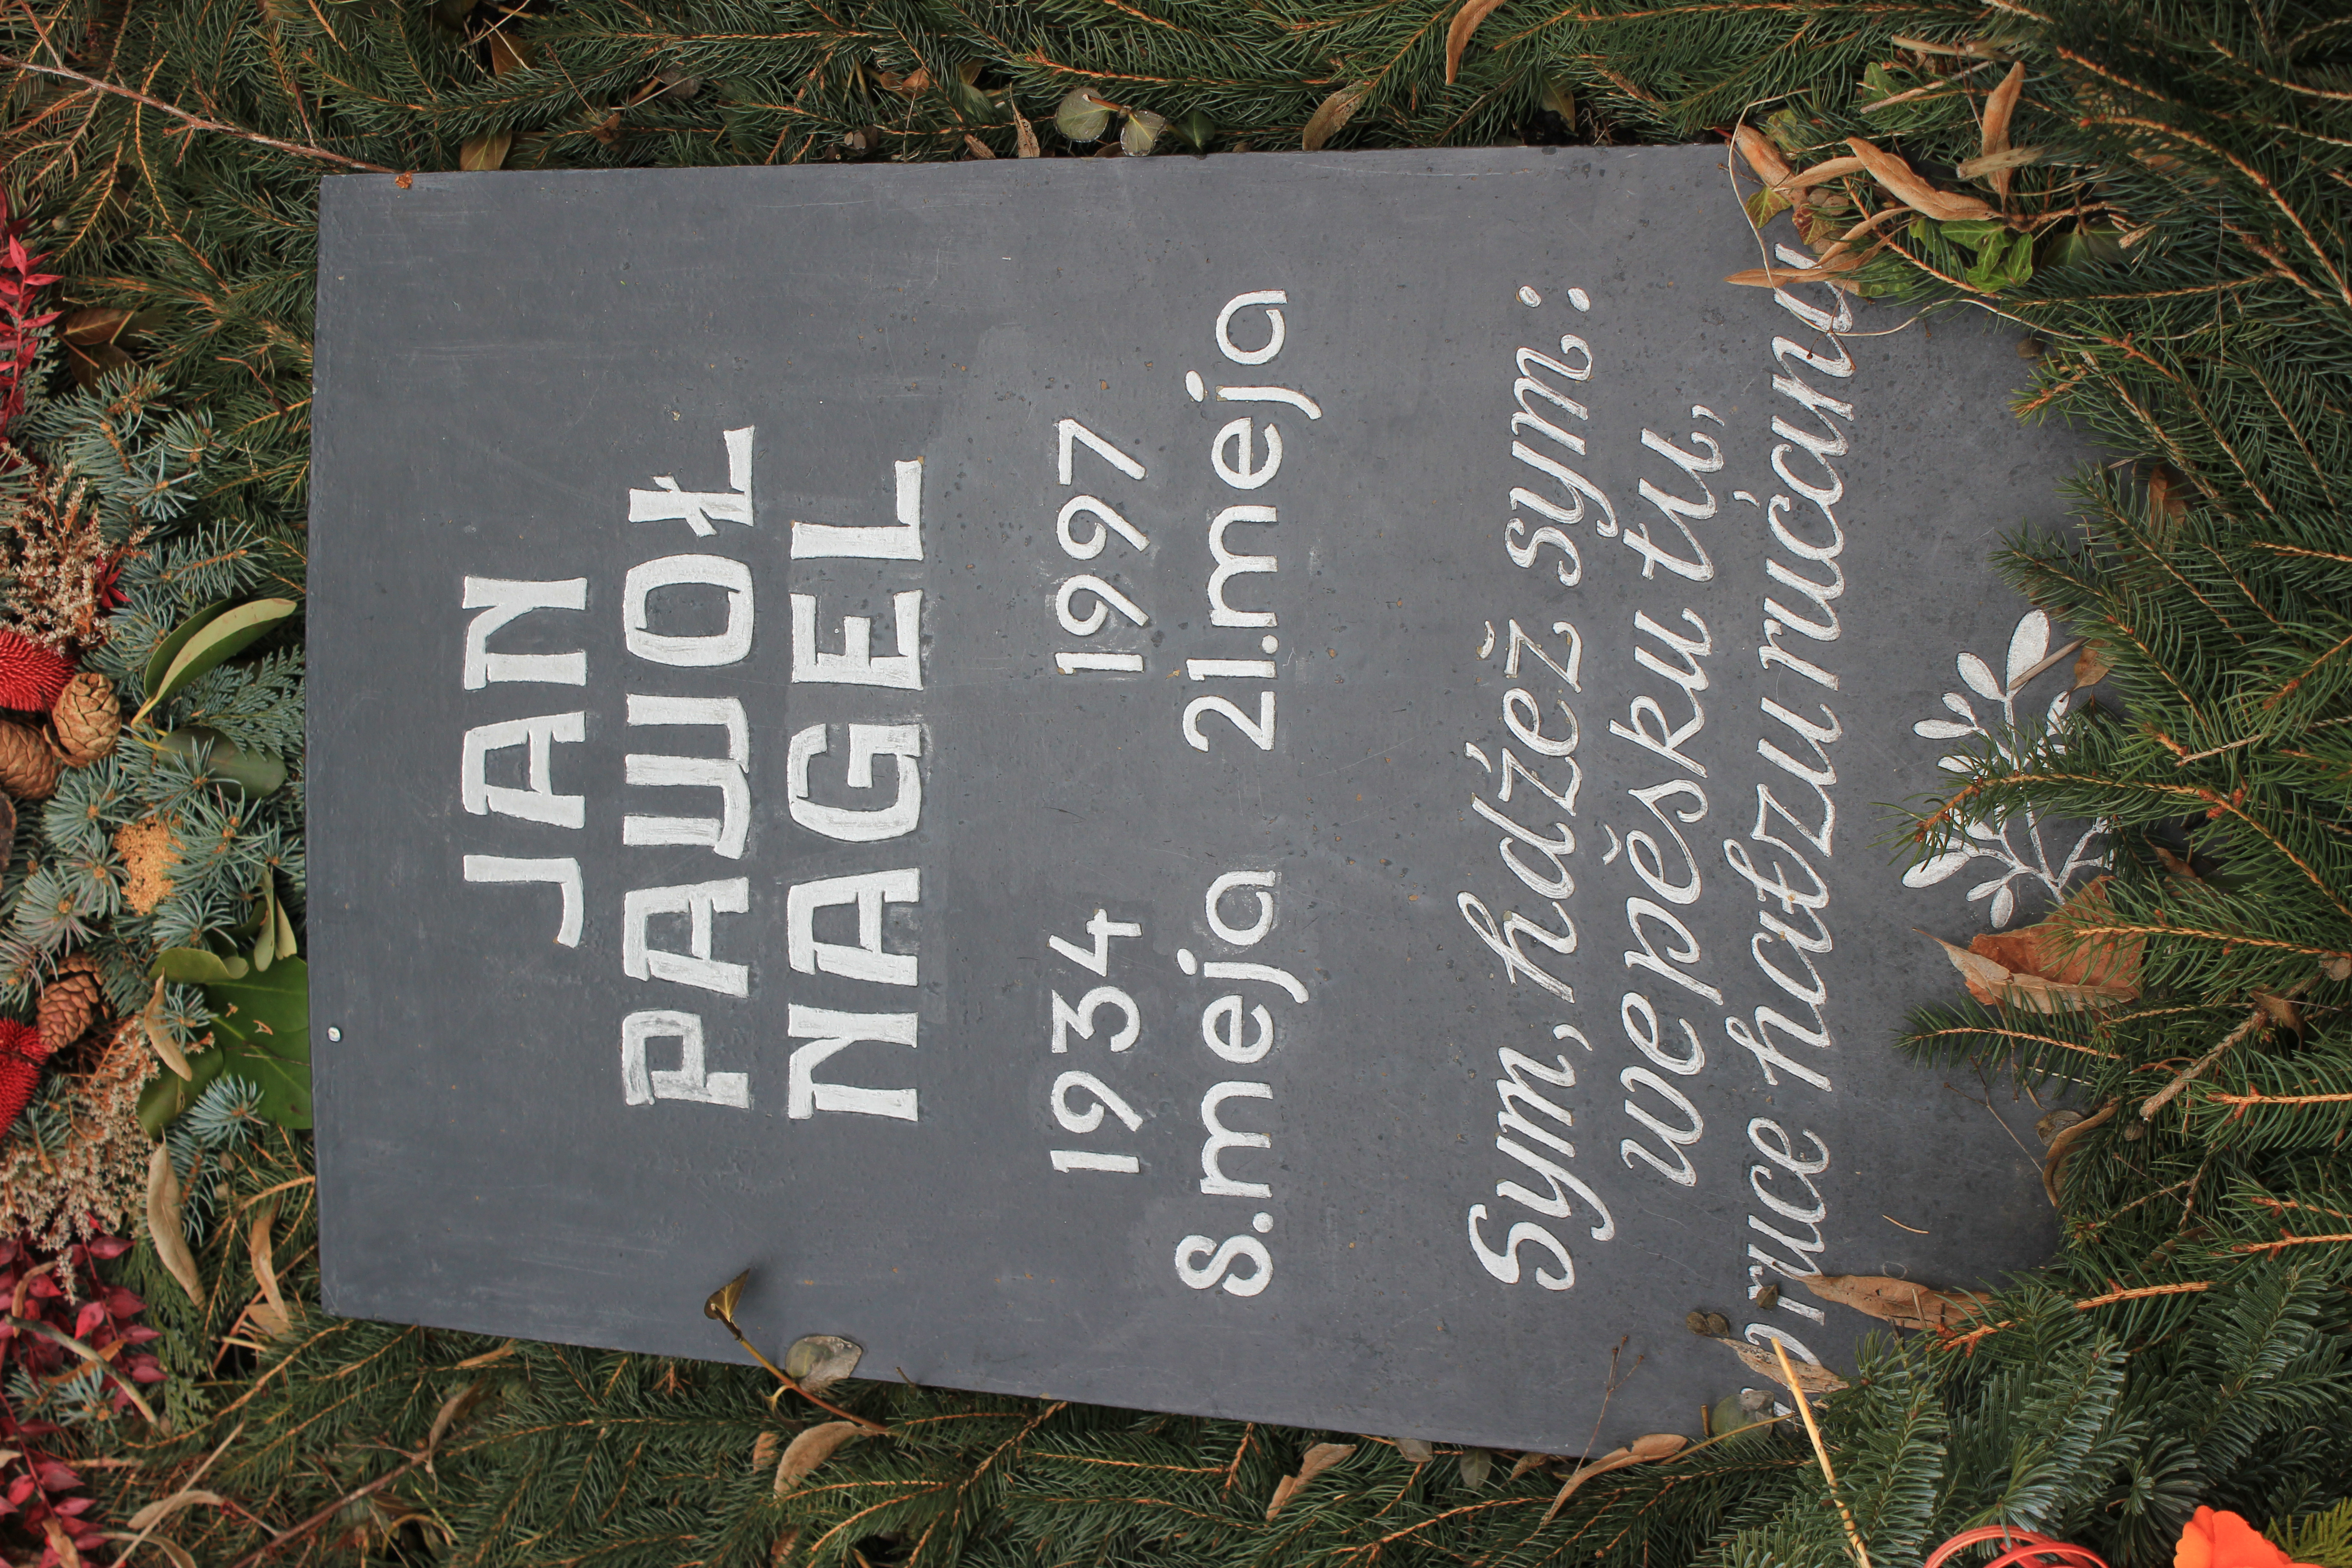 Grabstein von Jan Paul Nagel auf dem Lohsaer Friedhof